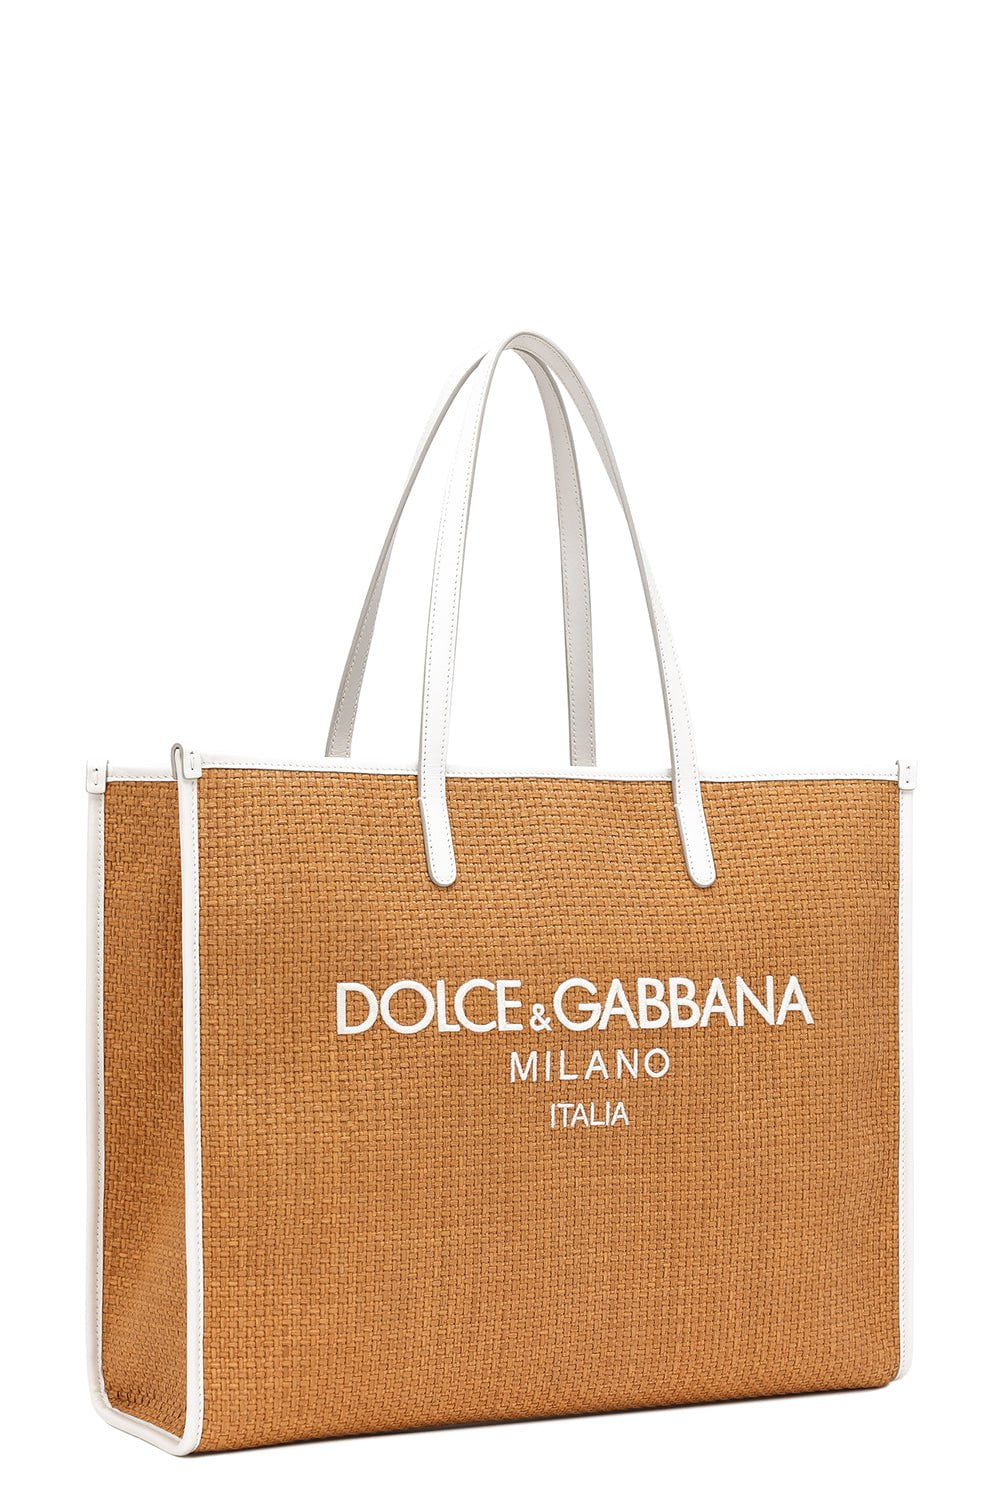 DOLCE & GABBANA-Large Shopper-MIELE/LATTE